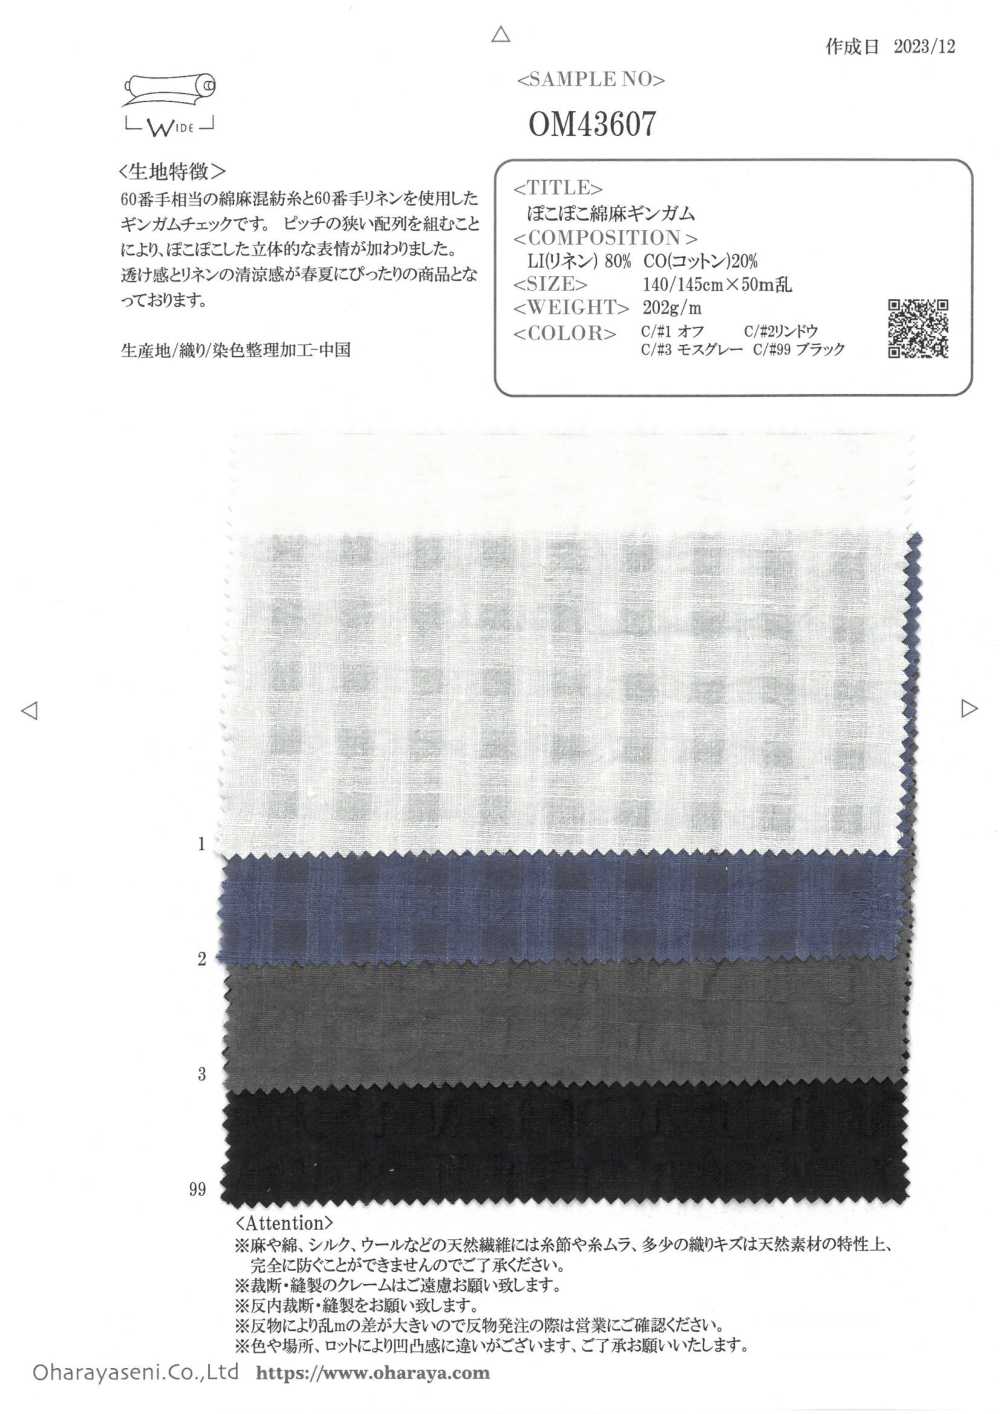 OM43607 Cuadros De Lino De Amapola[Fabrica Textil] Oharayaseni